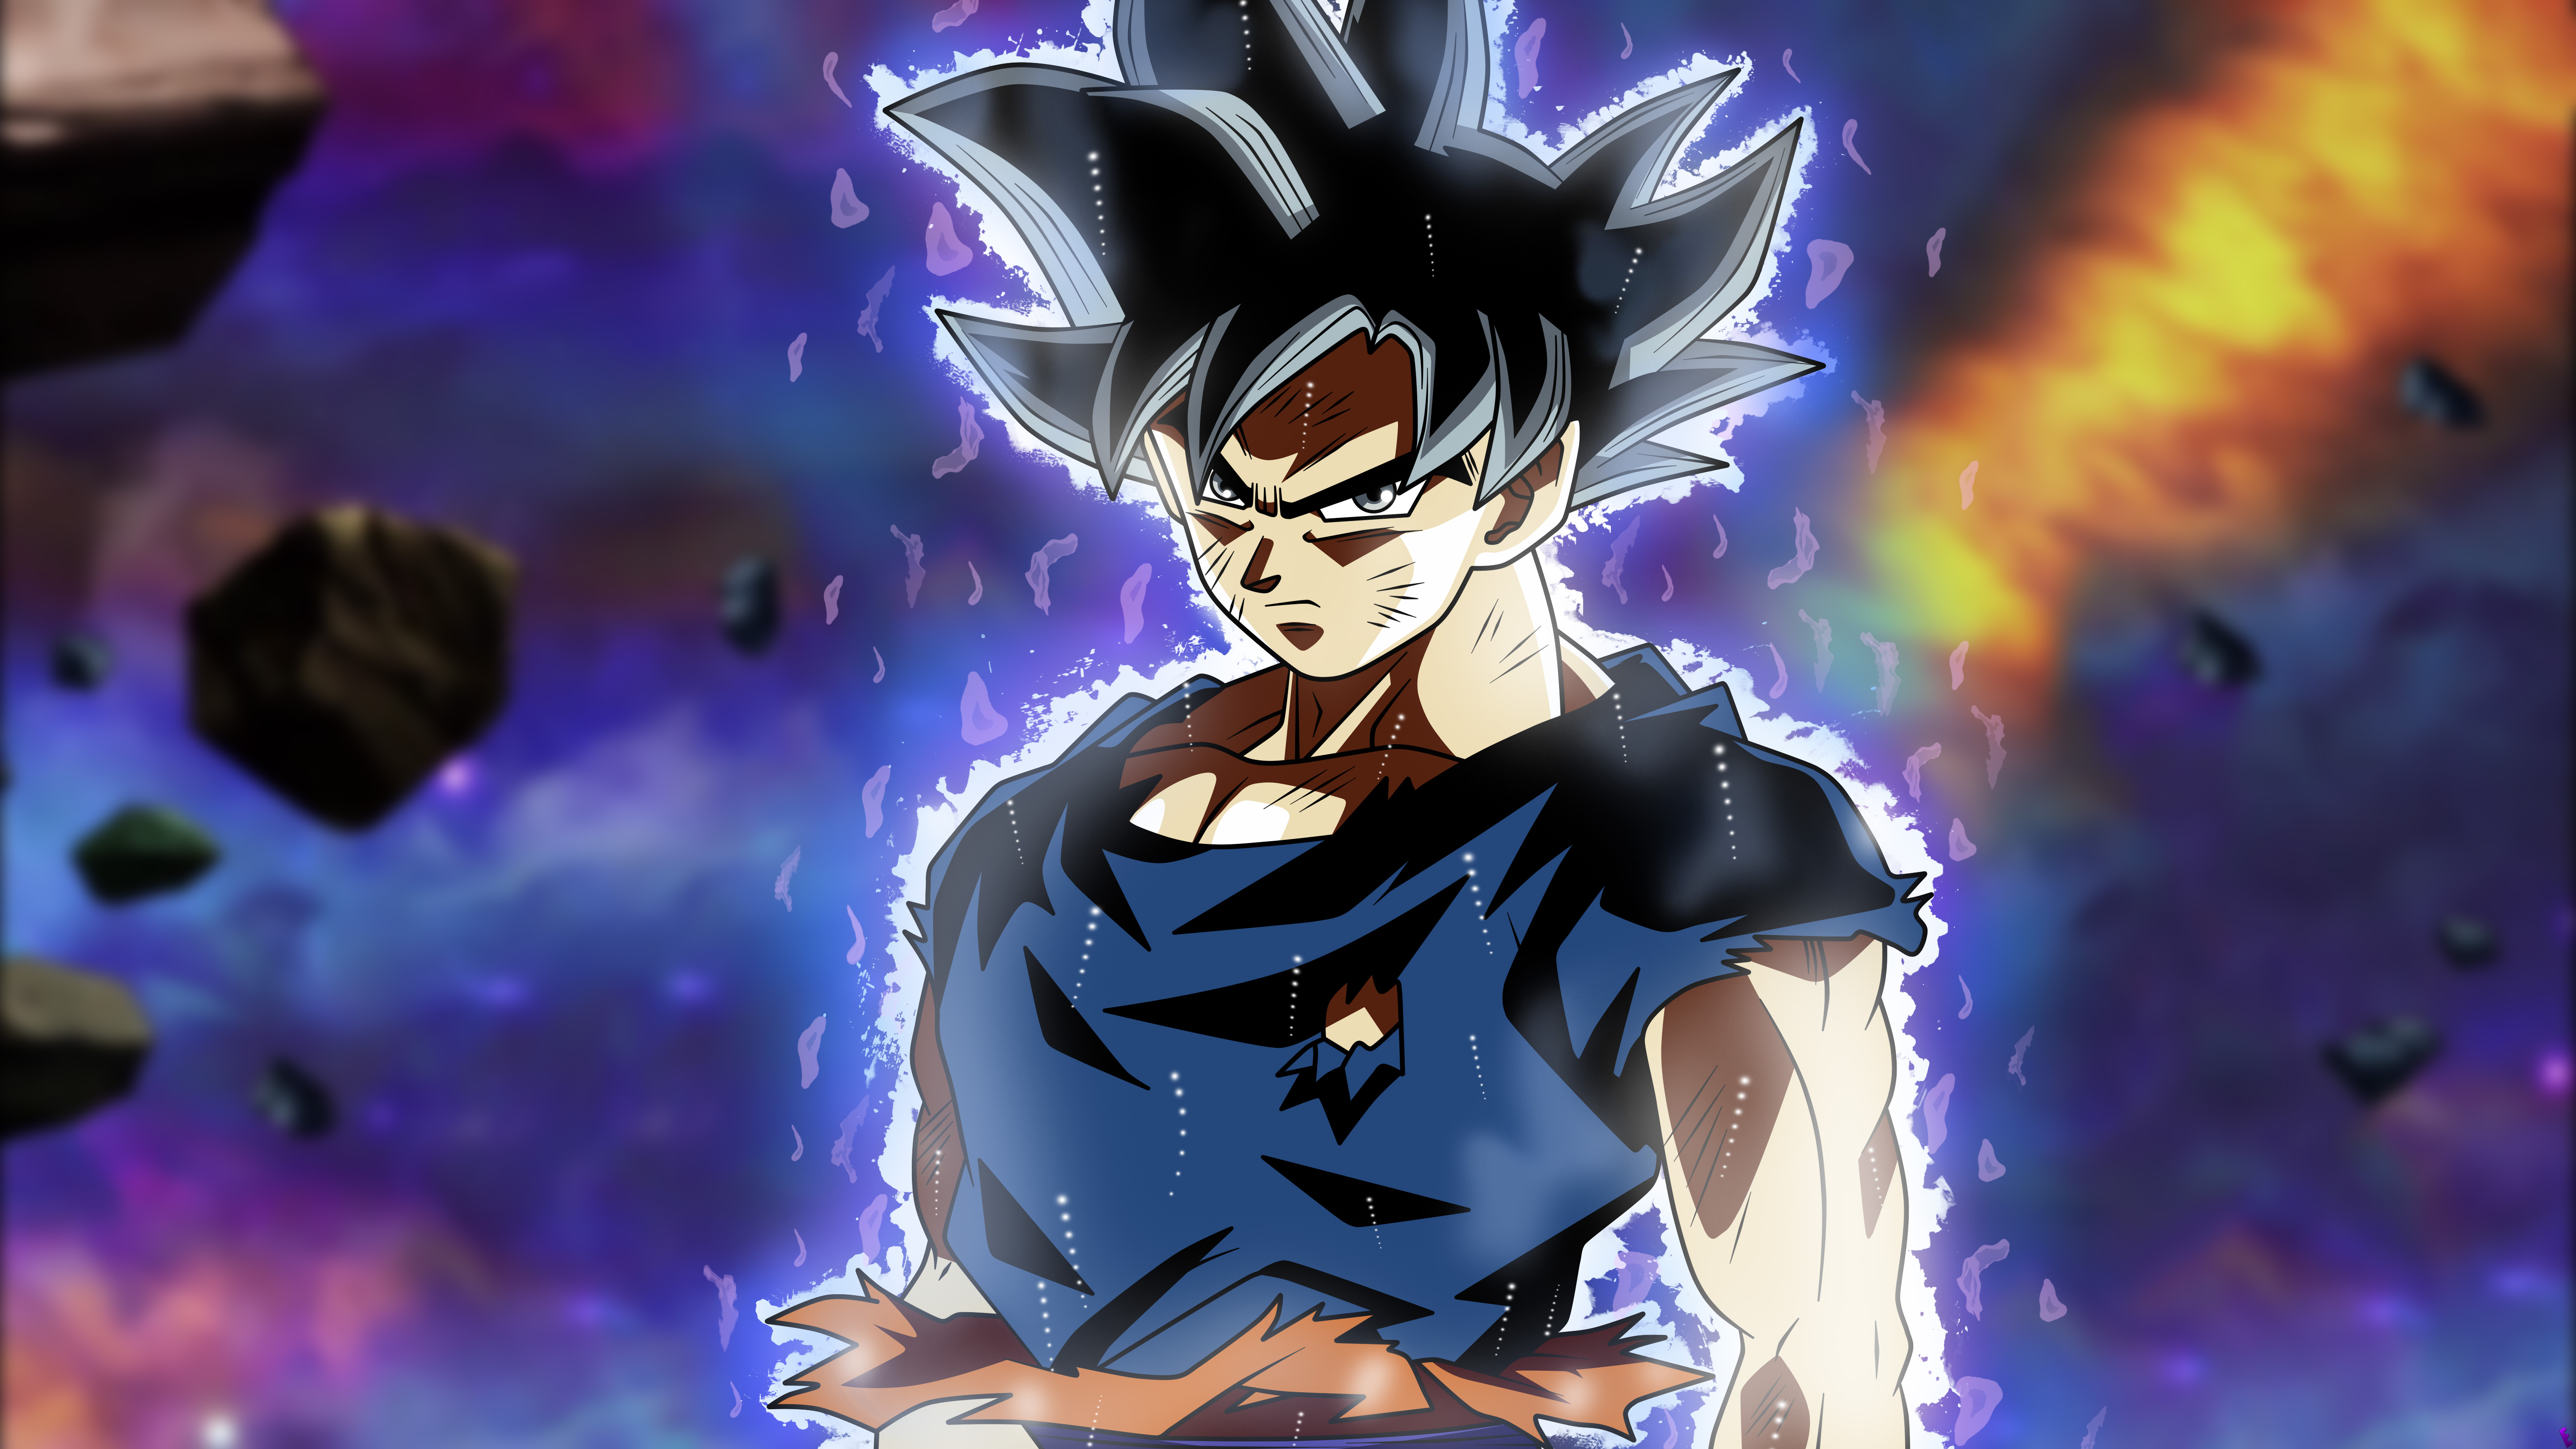 Son Goku Dragon Ball Super 5k Anime, HD Anime, 4k Wallpapers, Images